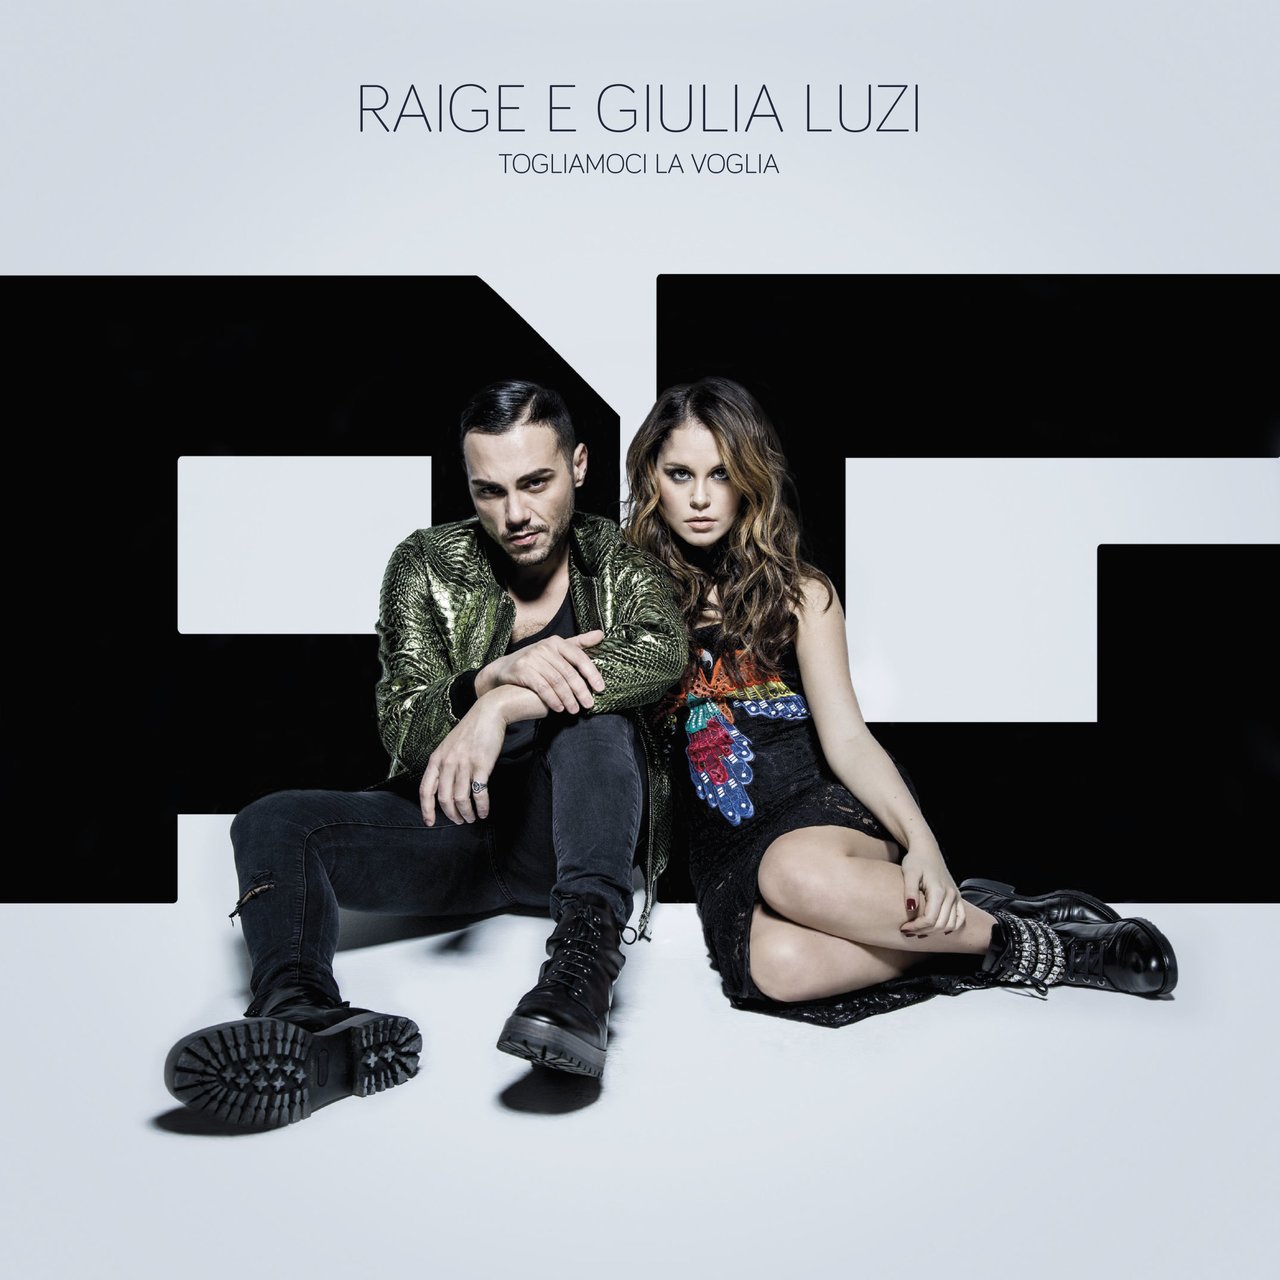 Raige featuring Giulia Luzi — Togliamoci la voglia cover artwork